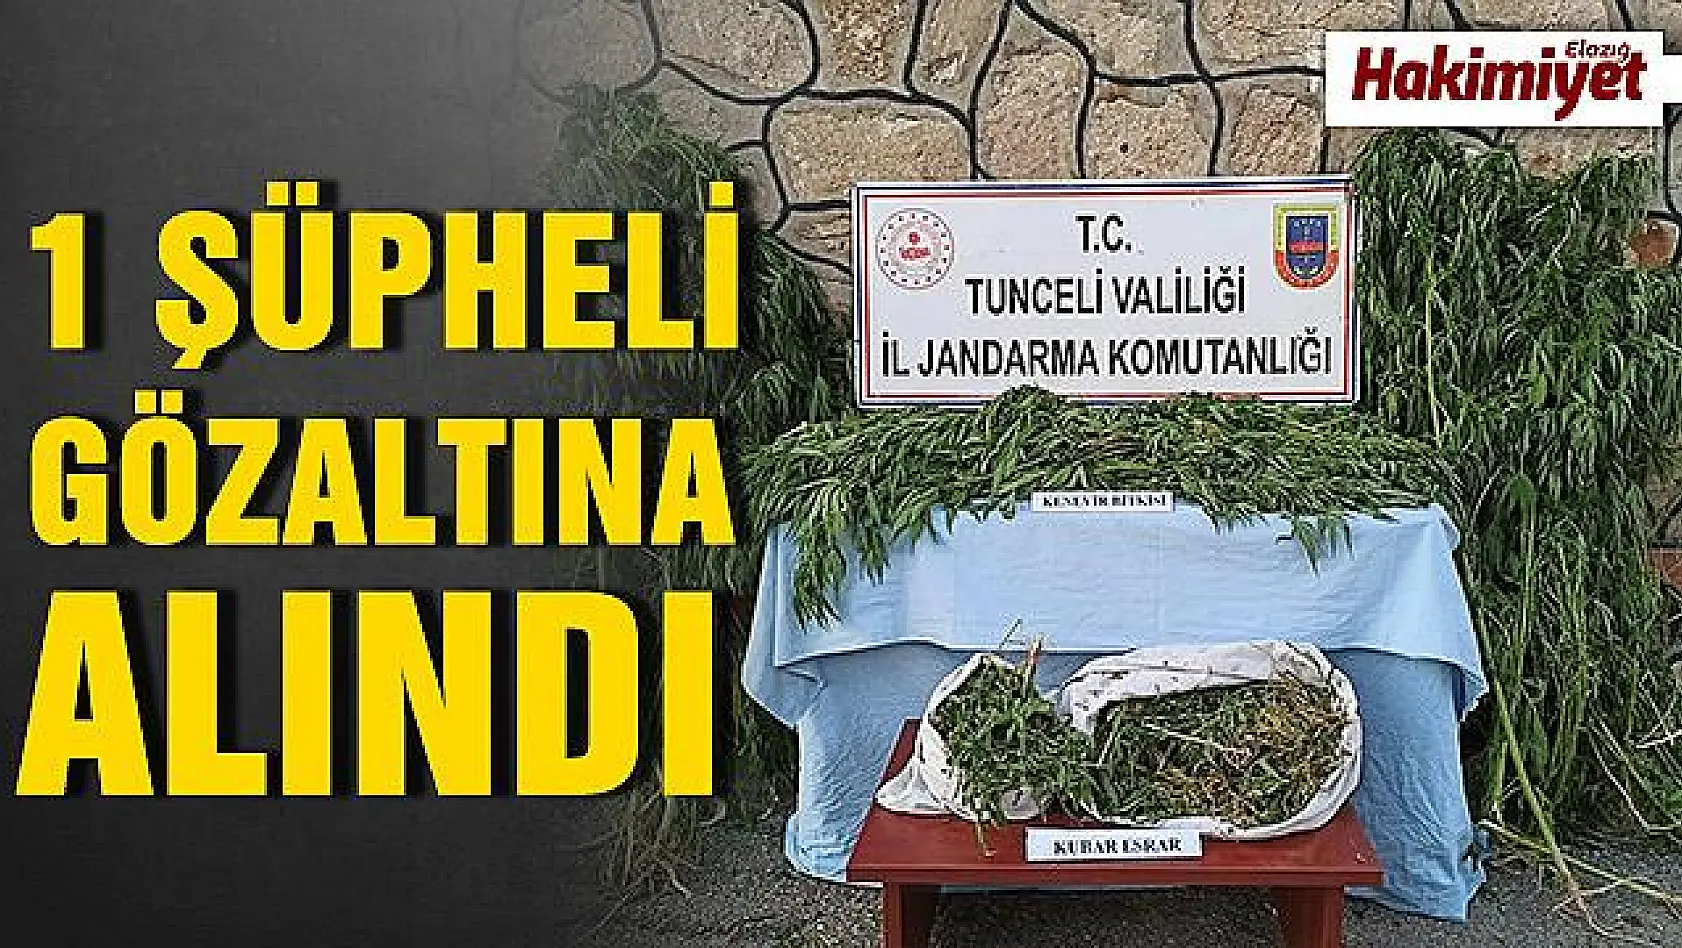 Tunceli'de uyuşturucu ile mücadele sürüyor